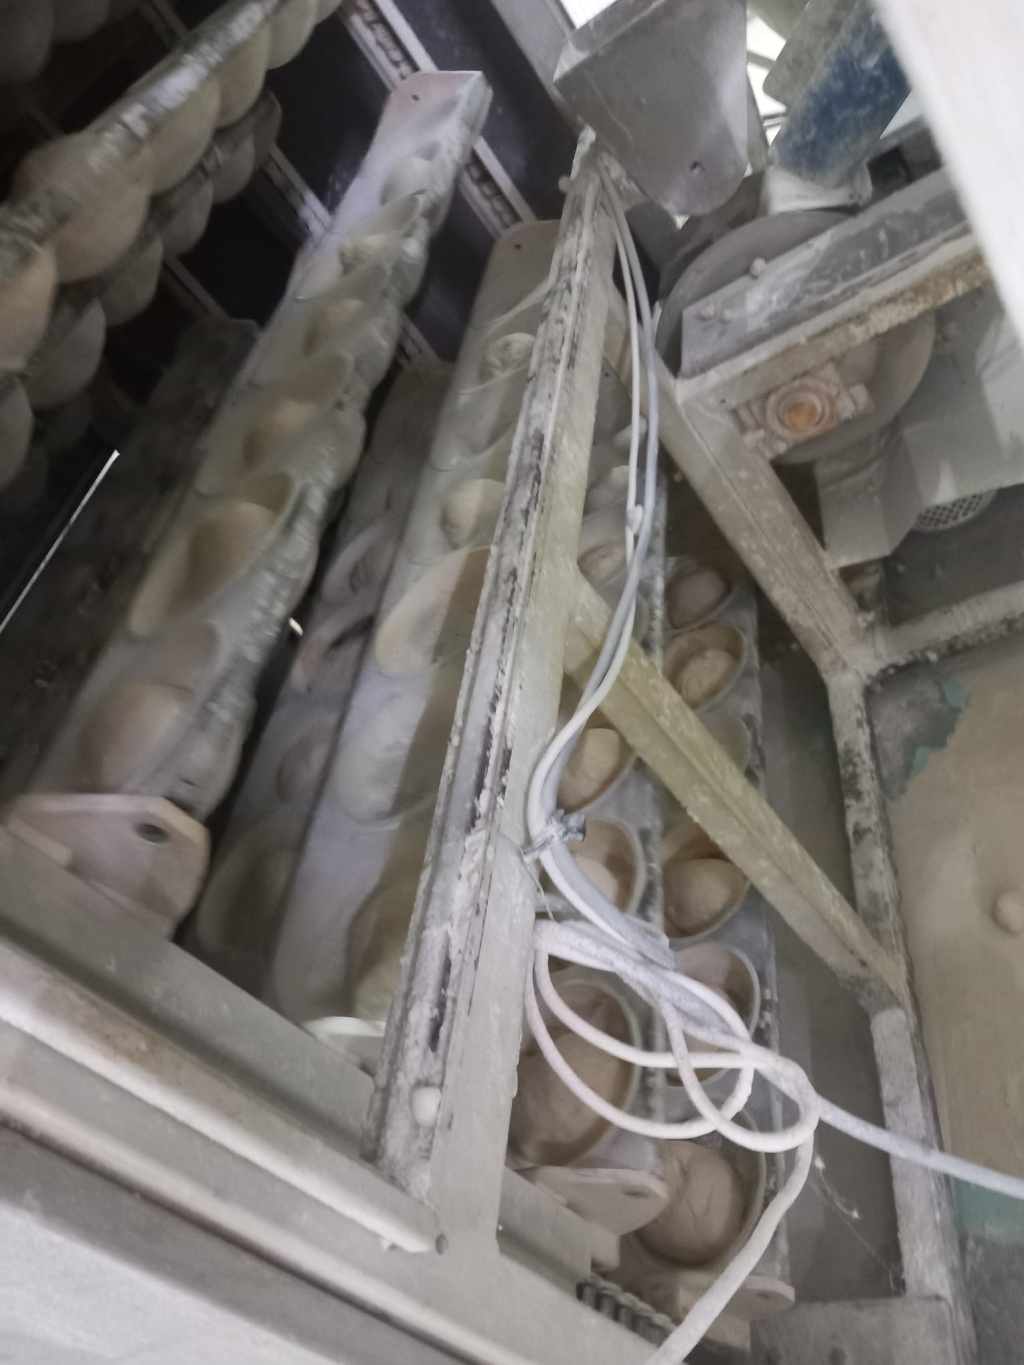 GALERIE FOTO: Ce a descoperit ANPC la o fabrică de pâine din București: mii de pâini retrase de la vânzare